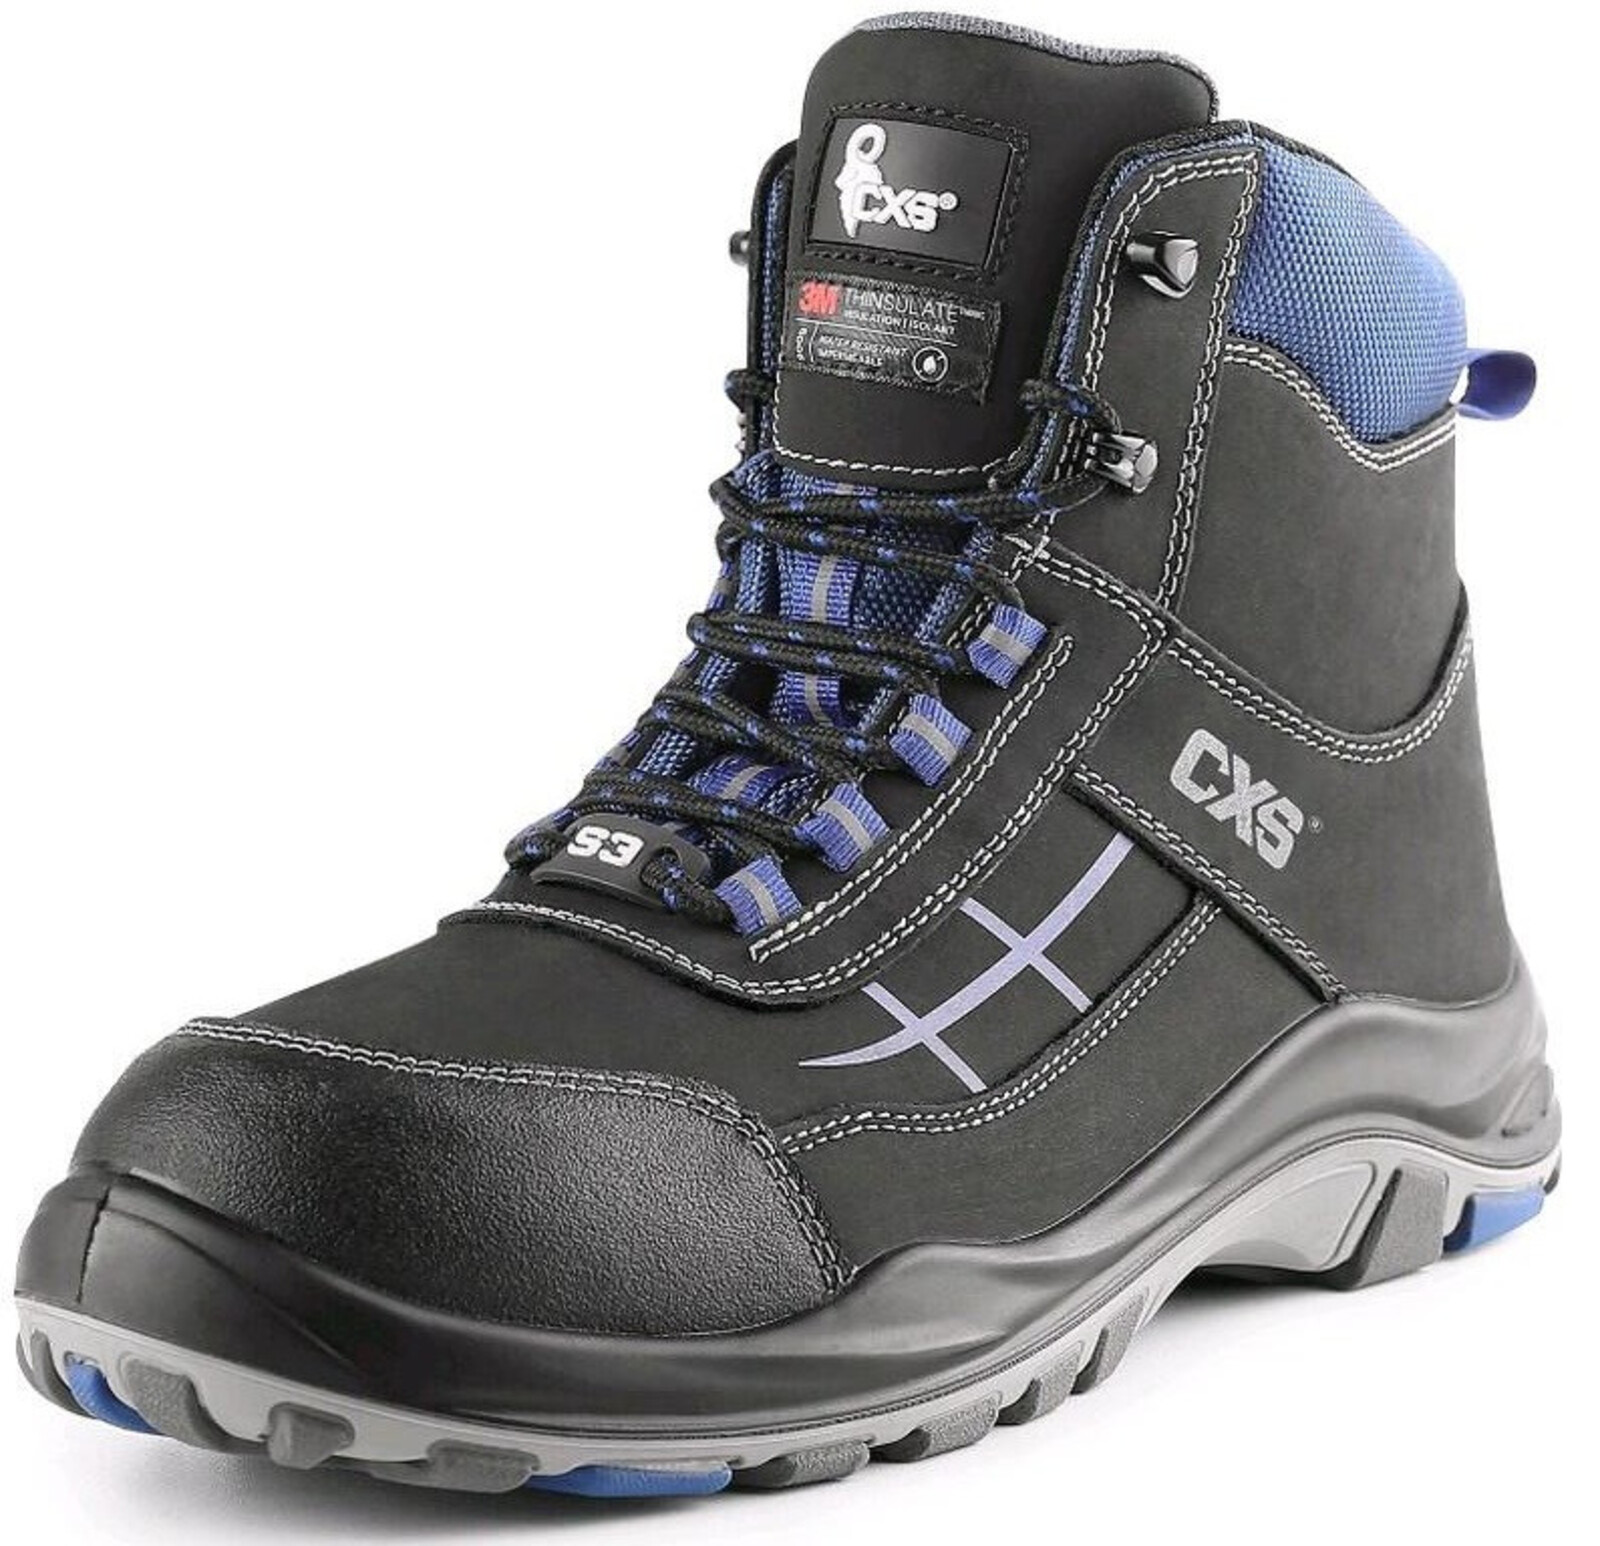 Zateplená bezpečnostná členková obuv CXS Dog Malamute S3 CI SRC - veľkosť: 42, farba: čierna/modrá